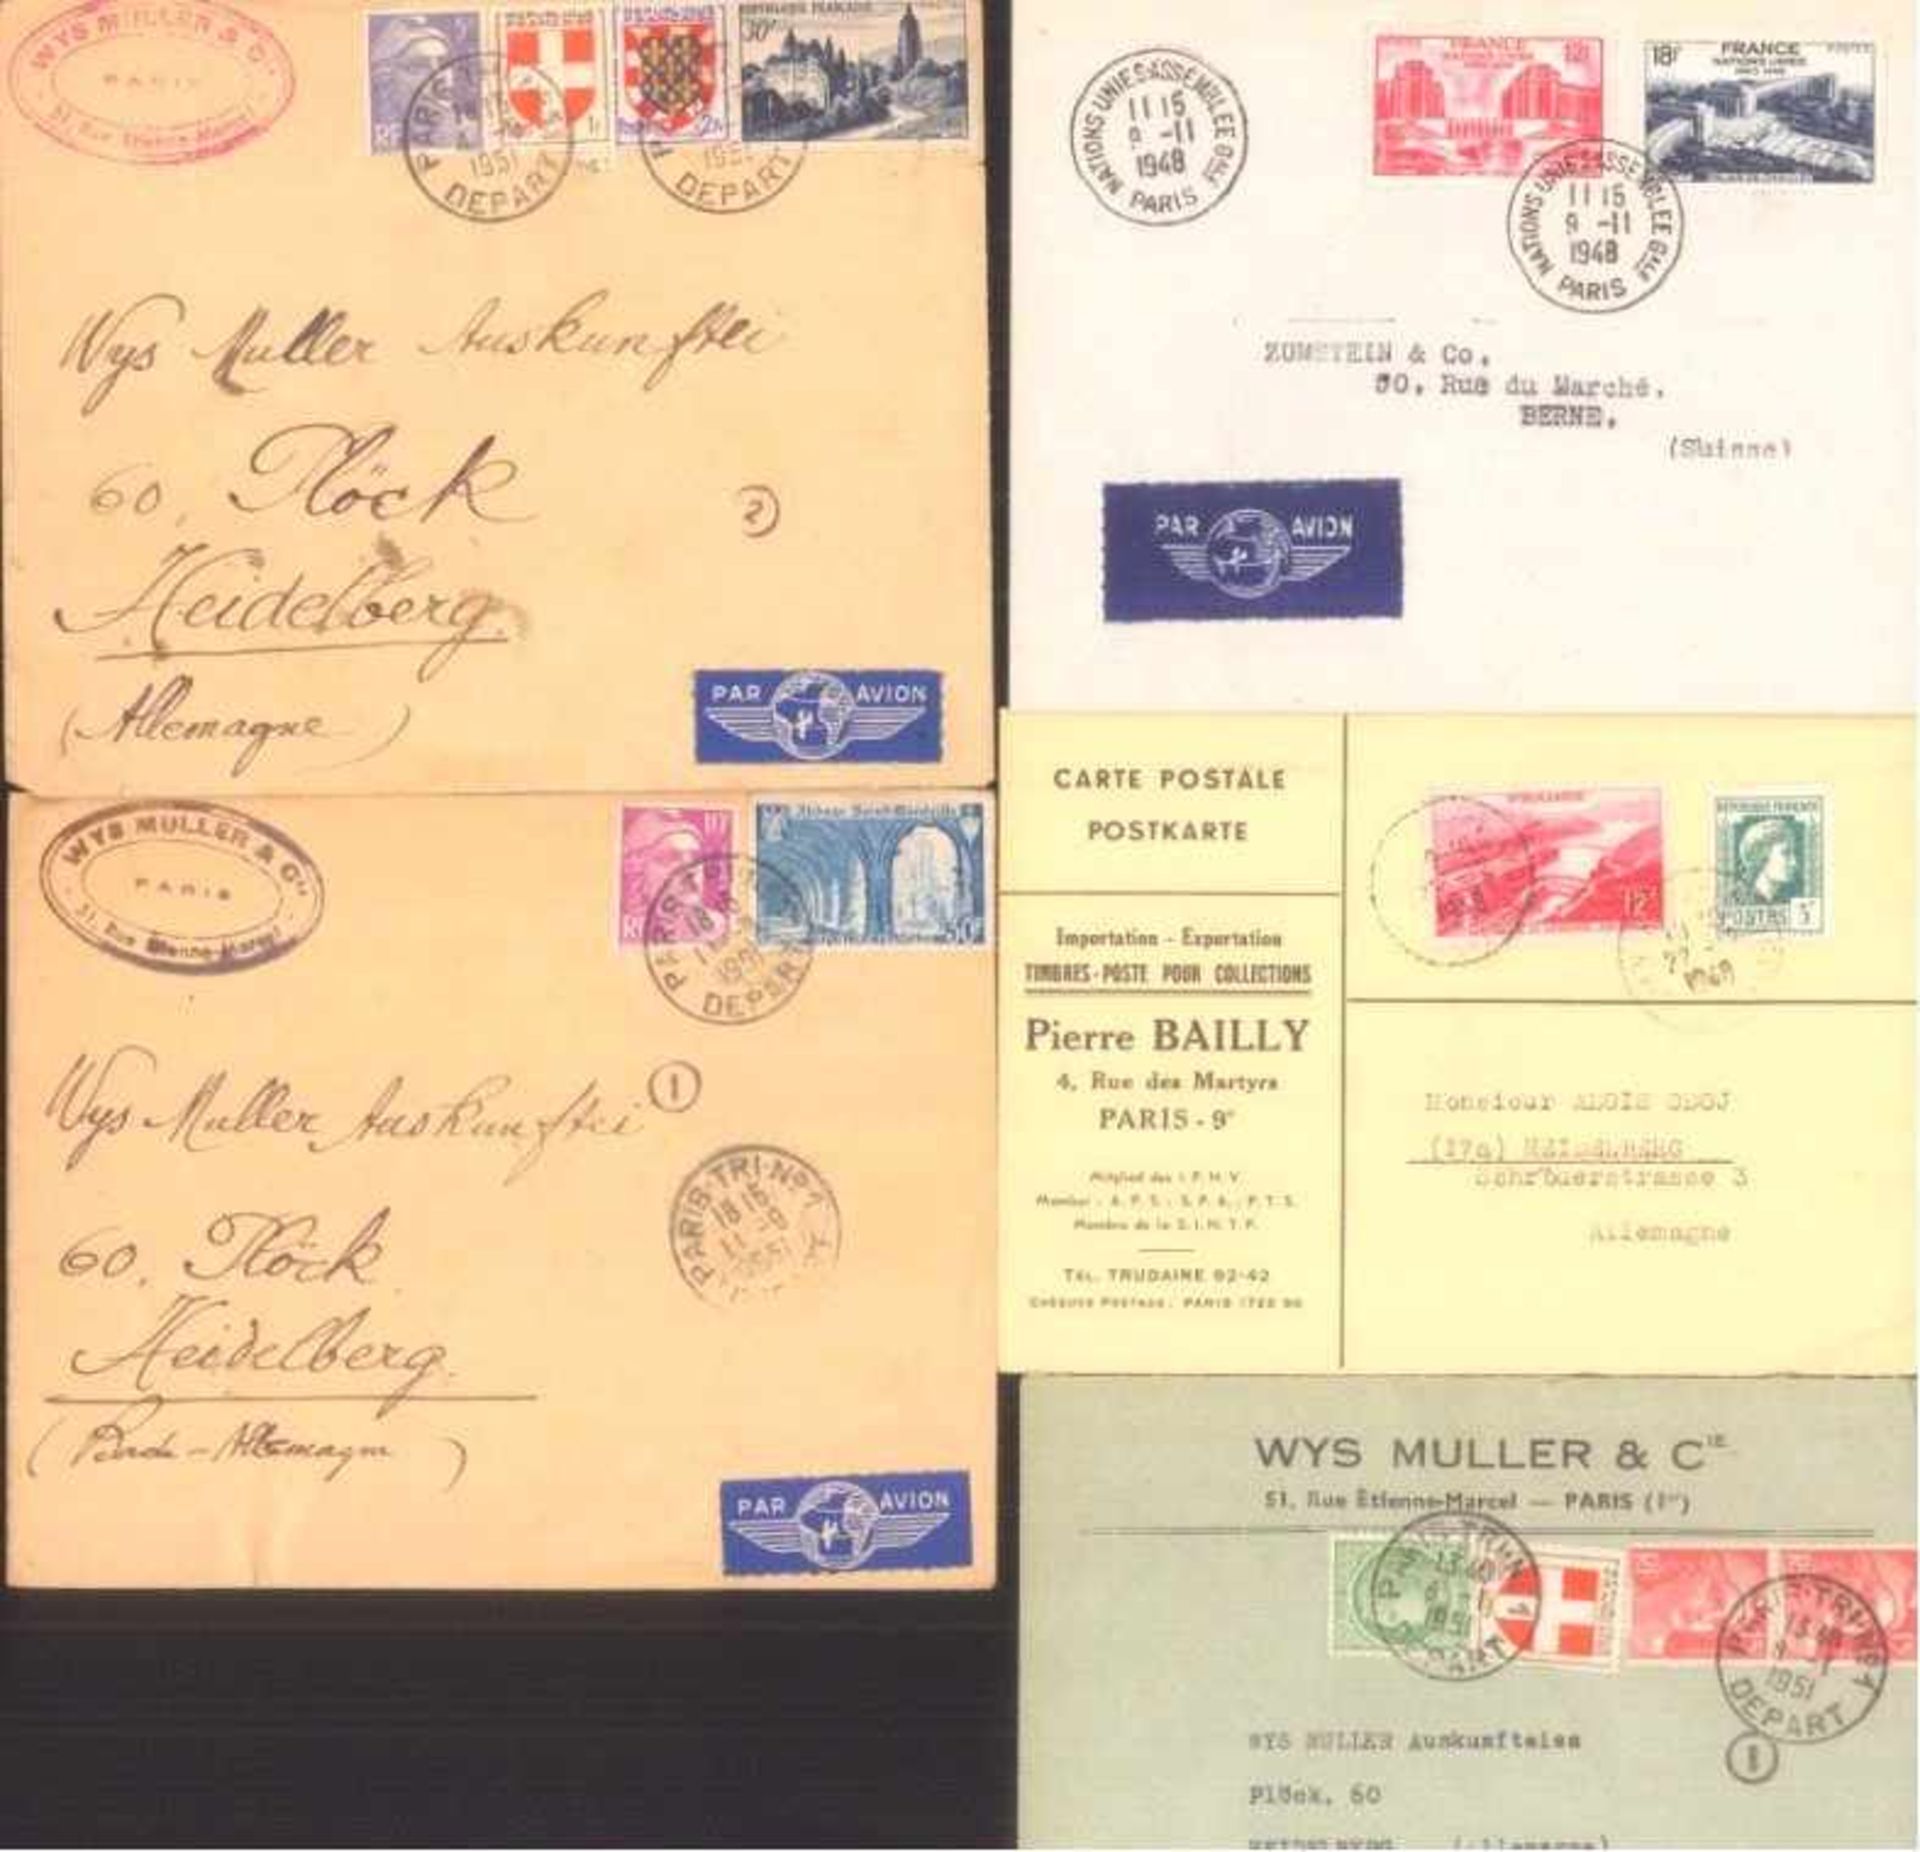 FRANKREICH 1948-1955, Belegelot, mit Luftpost!Lot von 23 Belegen aus 1948-1955. Fast alle nach - Bild 2 aus 4